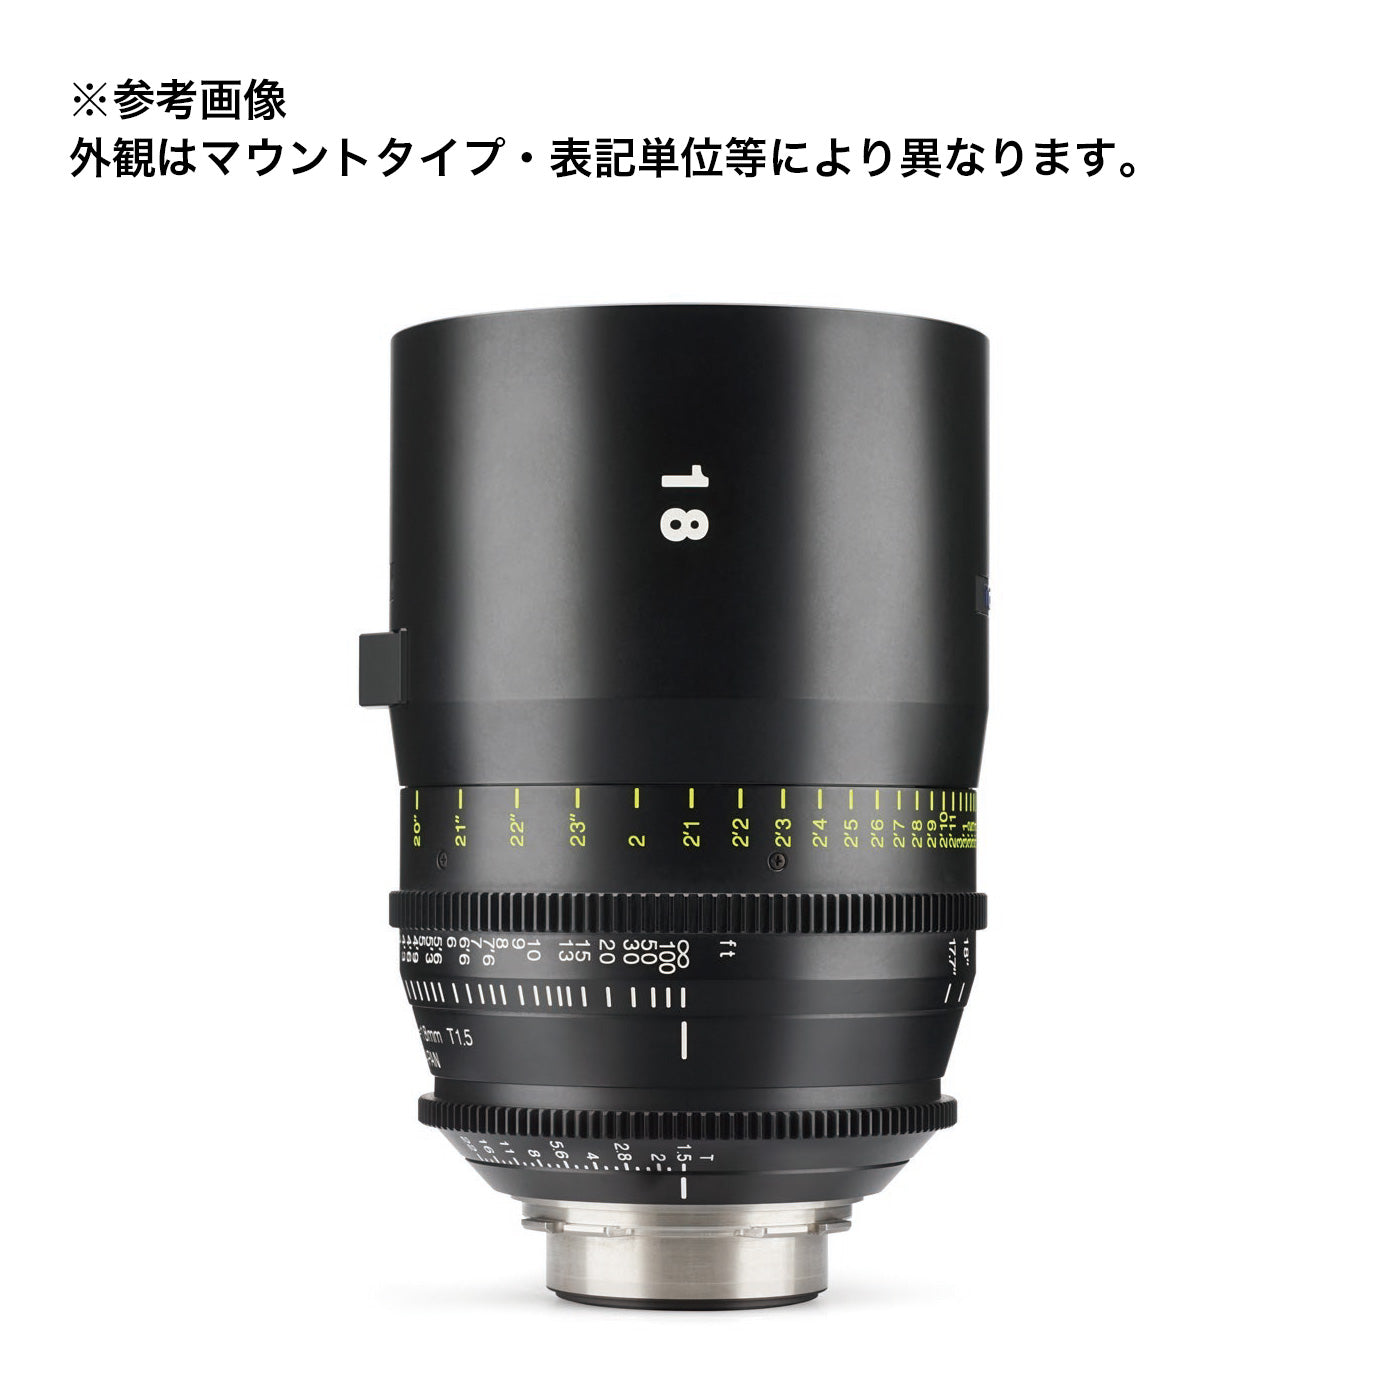 Tokina(トキナー) シネマプライムレンズ VISTA 18mm T1.5 CINEMA LENS EFマウント フィート表記 [264144]